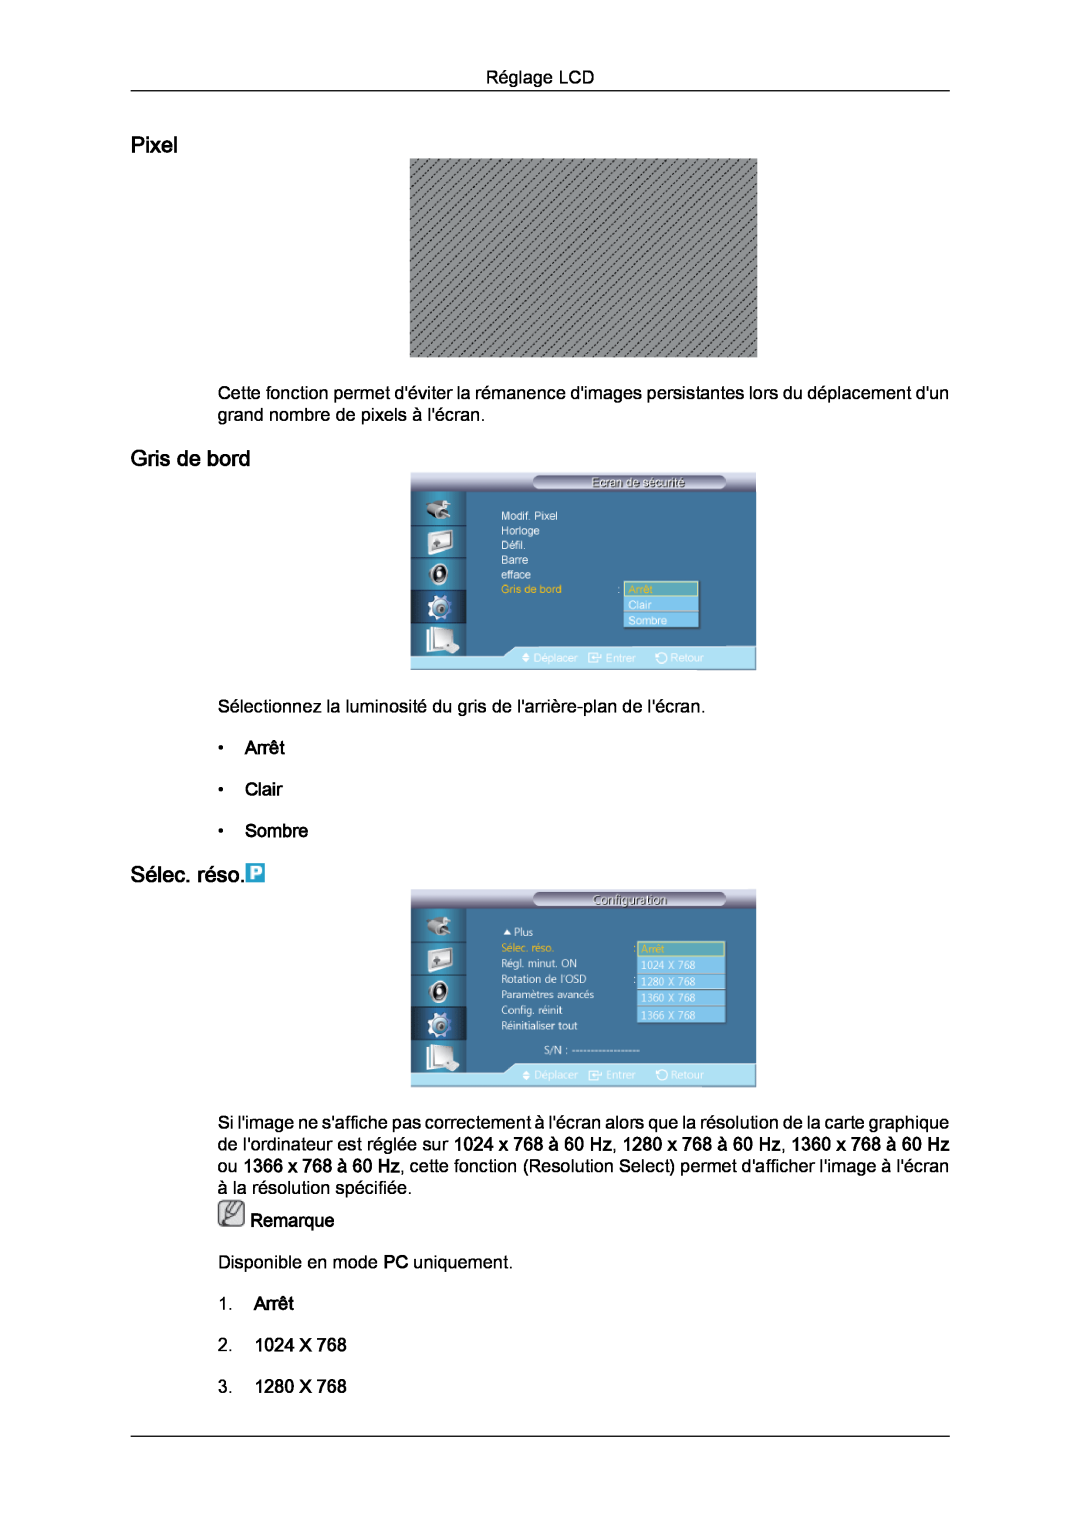 Samsung LH32CRSMBC/EN manual Pixel, Gris de bord, Sélec. réso, Arrêt Clair Sombre, Arrêt 2. 1024 X 3. 1280 X, Remarque 